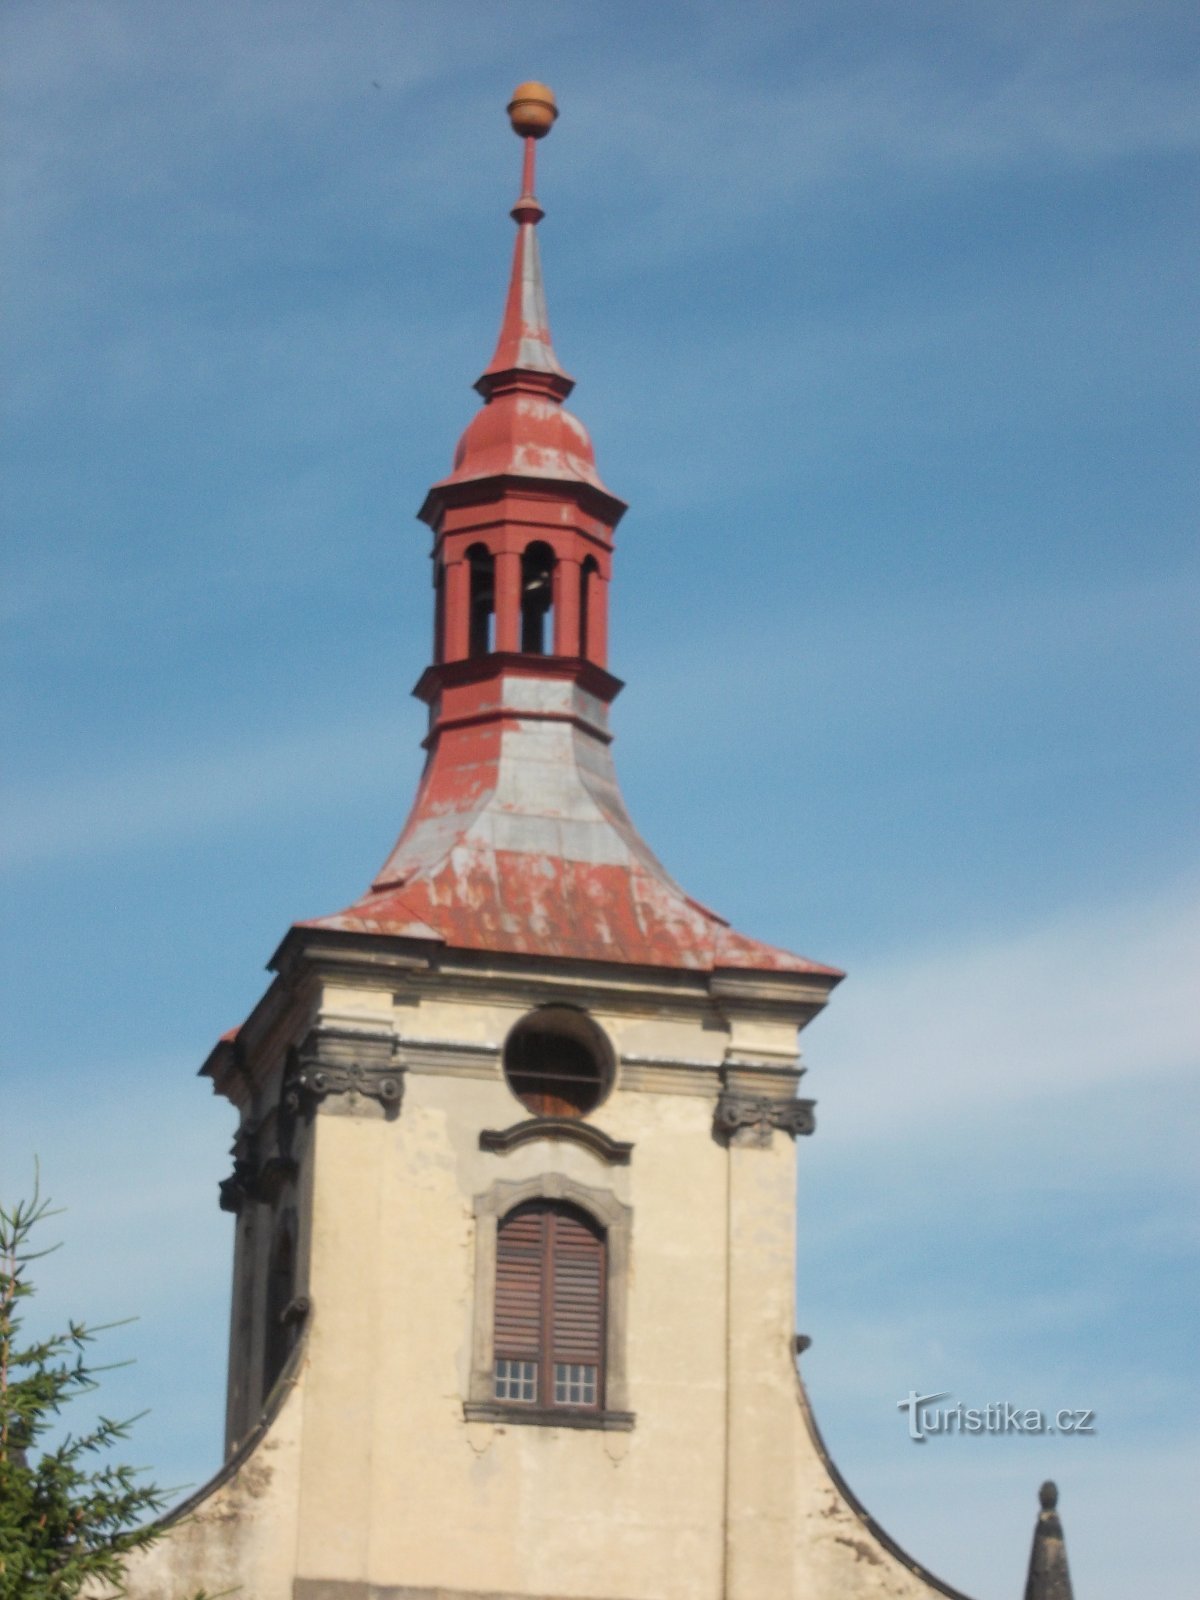 otwarcie wieży kościelnej na zegar